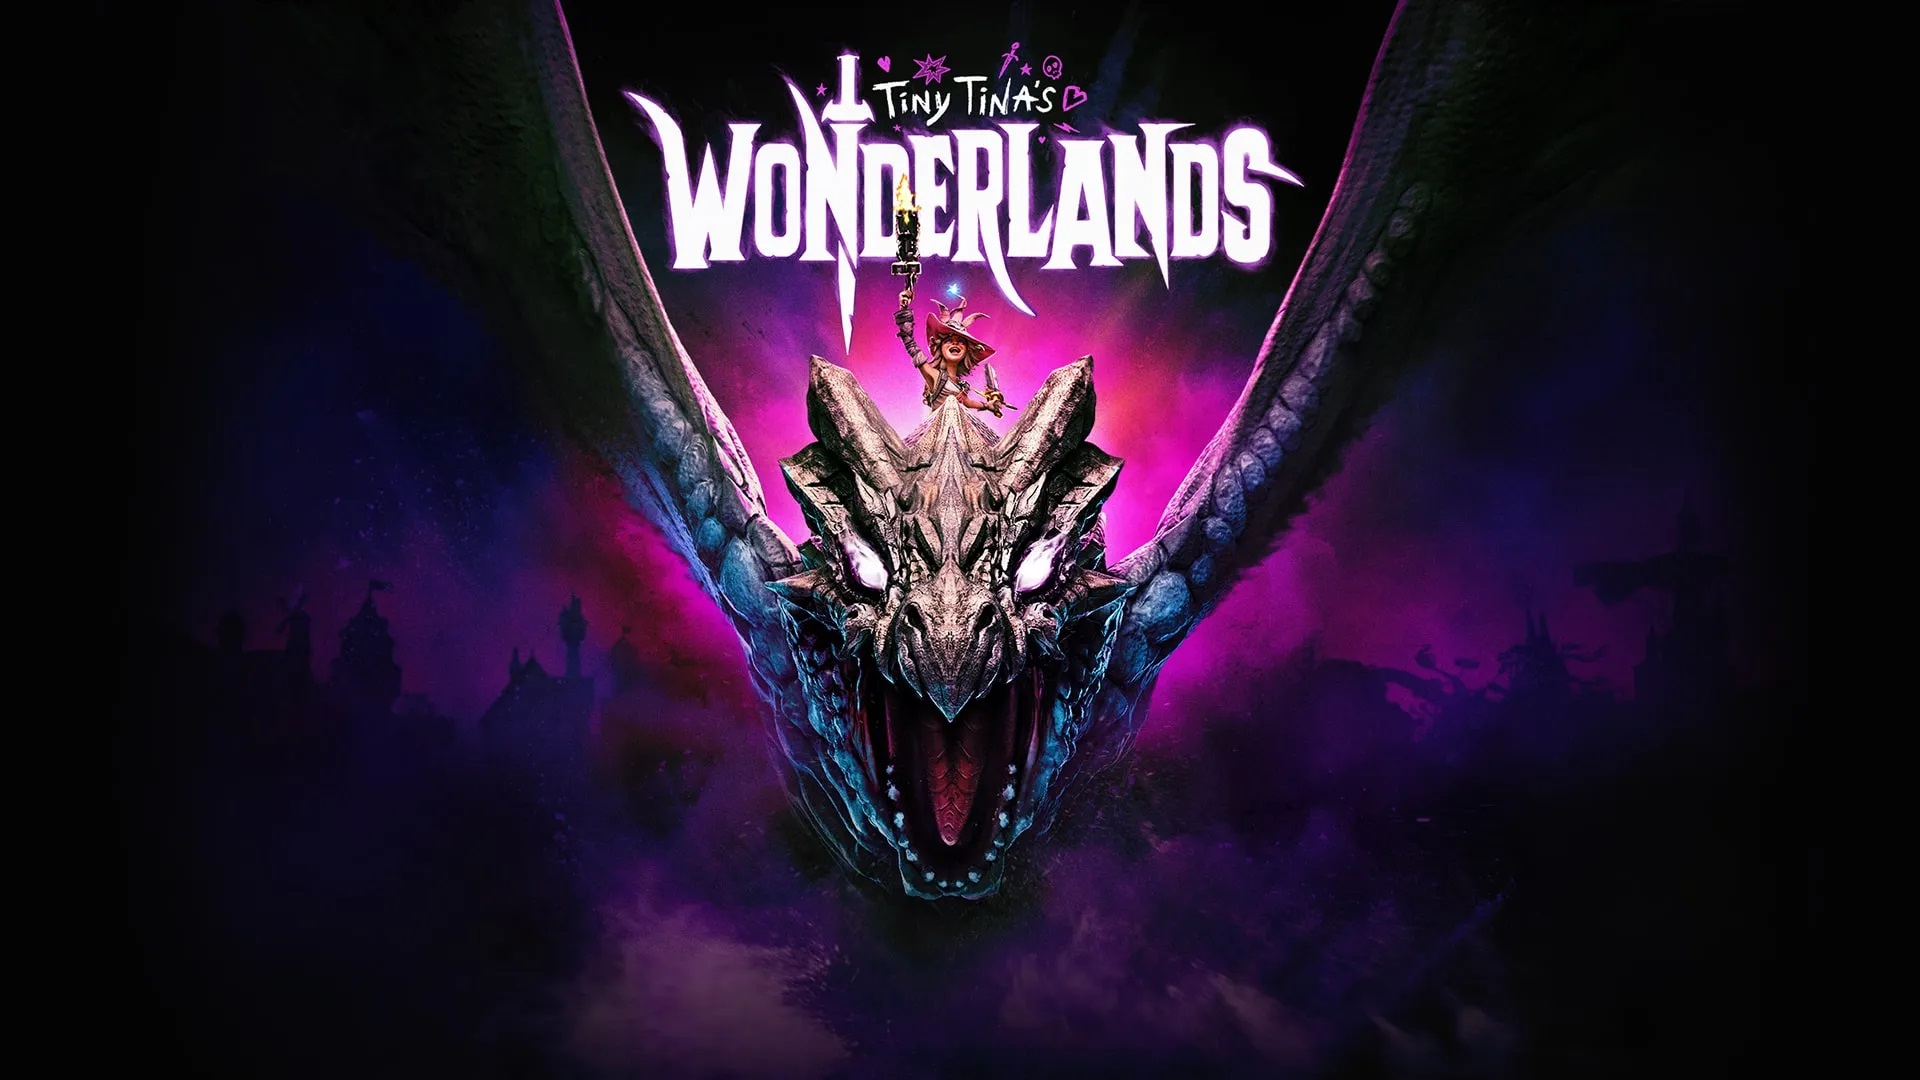 Tiny Tina’s Wonderlands’ การผจญภัยครั้งใหม่ ที่กำลังจะเริ่มต้นพร้อมกัน มีนาคม 2565